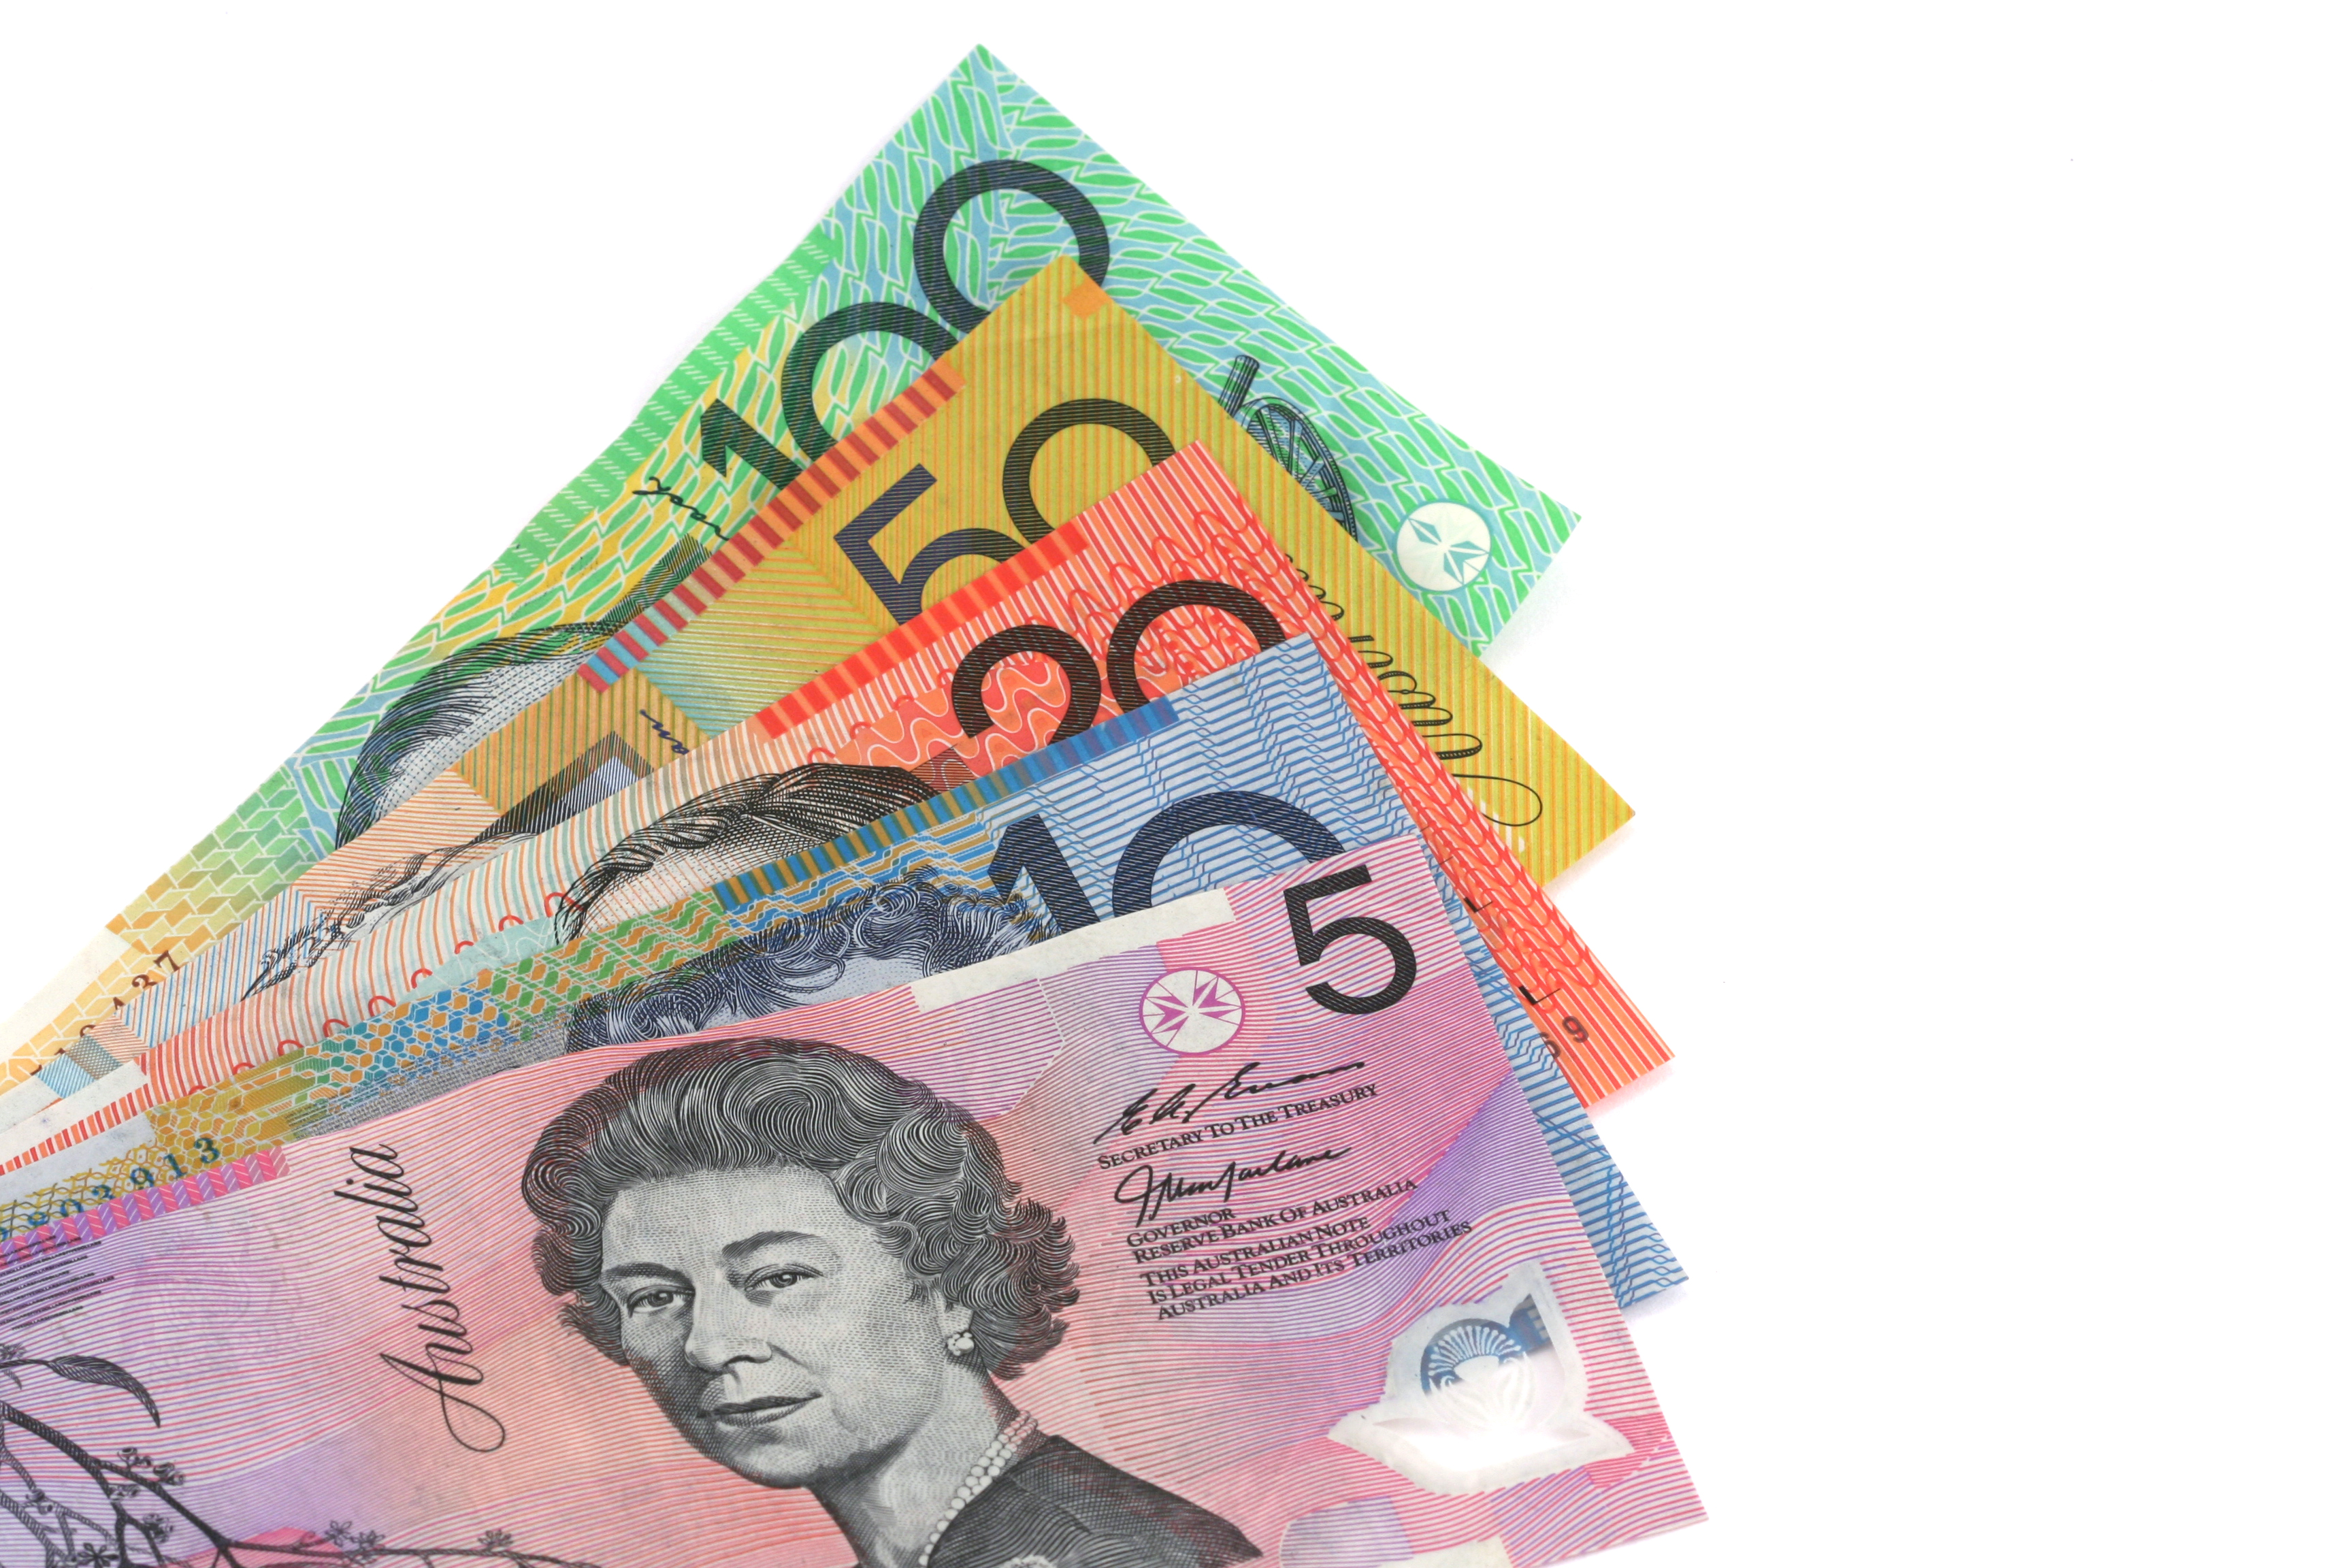 Австралийская валюта. Австралийские деньги пластиковые. Австралийский доллар. Денежная валюта Австралии. Австралийский доллар купюры.